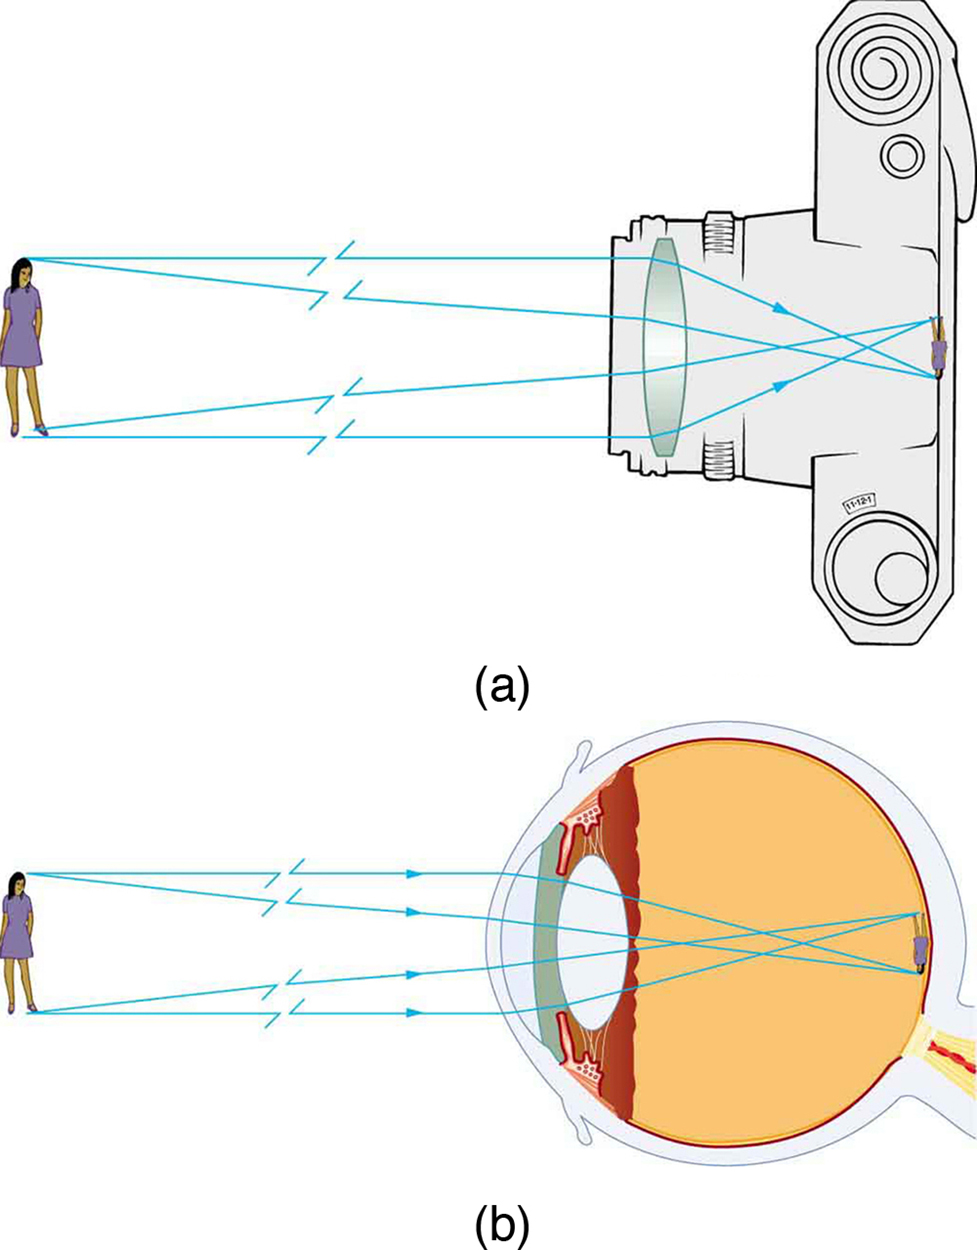 A Figura (a) mostra raios incidentes vindos de um objeto (uma menina) e caindo sobre uma lente convexa em uma câmera. Os raios após a refração produzem uma imagem invertida, real e diminuída no filme da câmera. A Figura (b) mostra o mesmo objeto na frente de um olho humano. Os raios do objeto incidem sobre a lente convexa e, na refração, produzem uma imagem real, invertida e diminuída na retina do globo ocular.